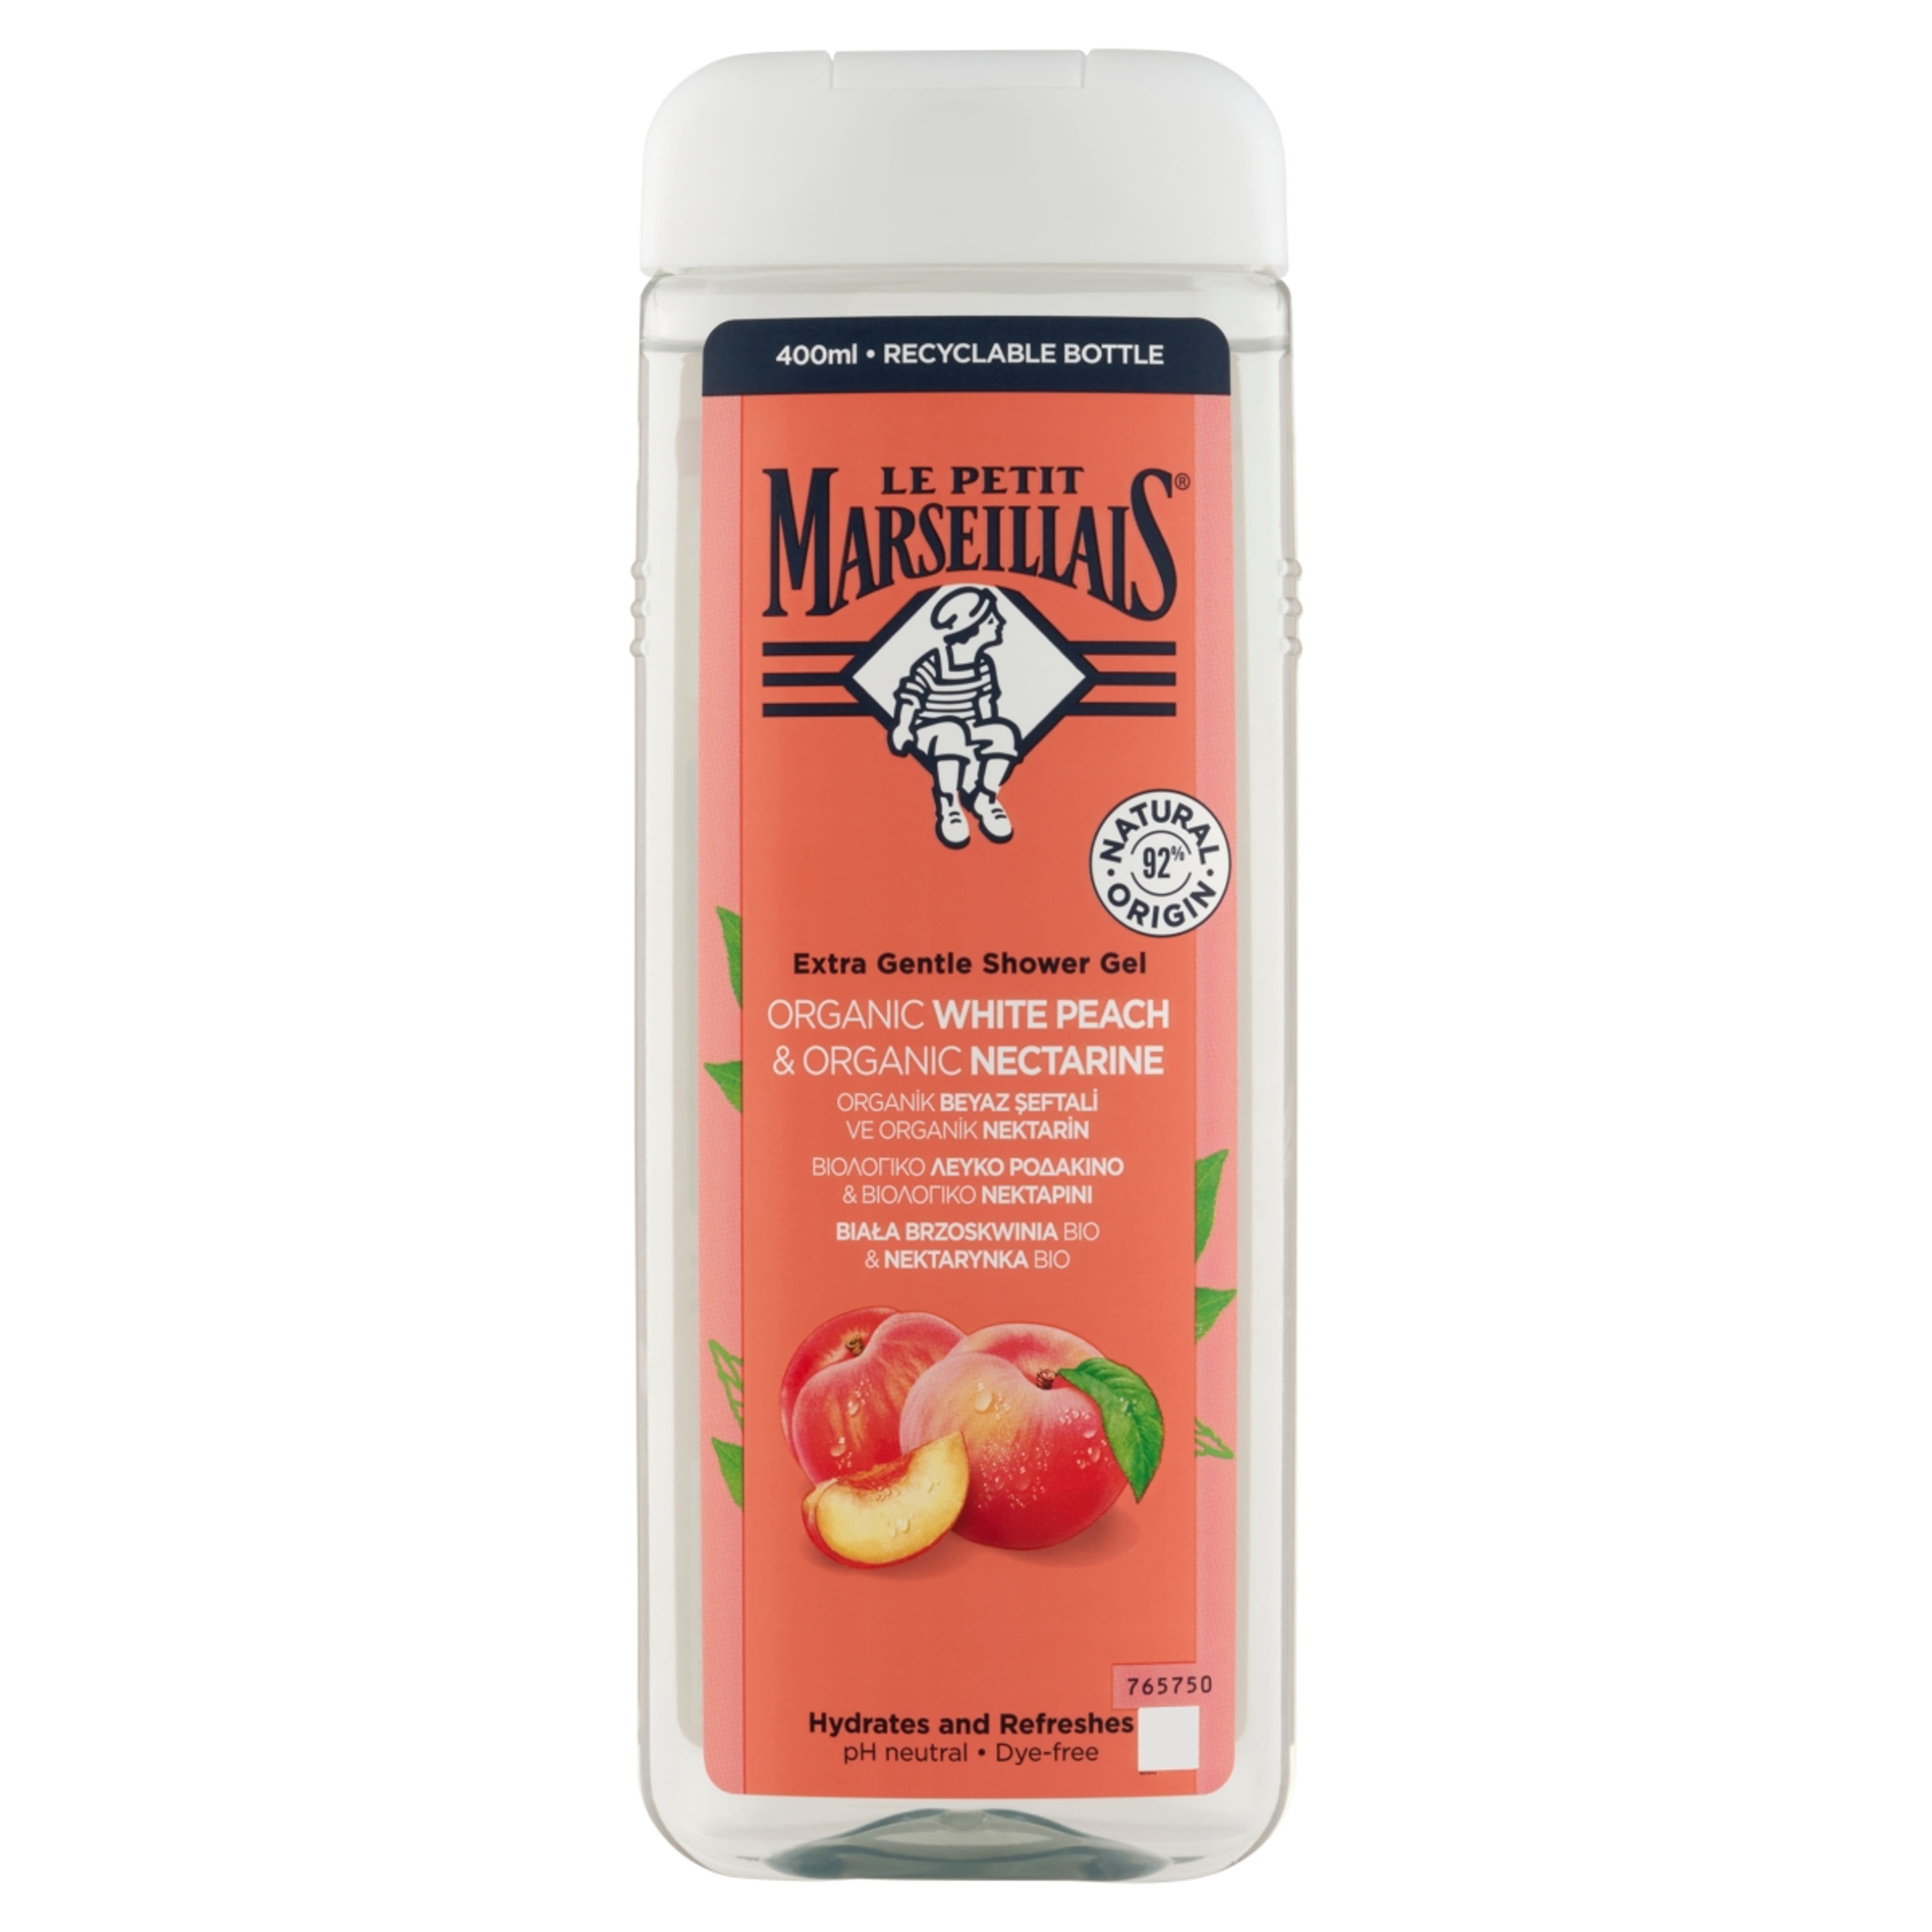 Le Petit Marseillais tusfürdő őszibarack & nektarin - 400 ml